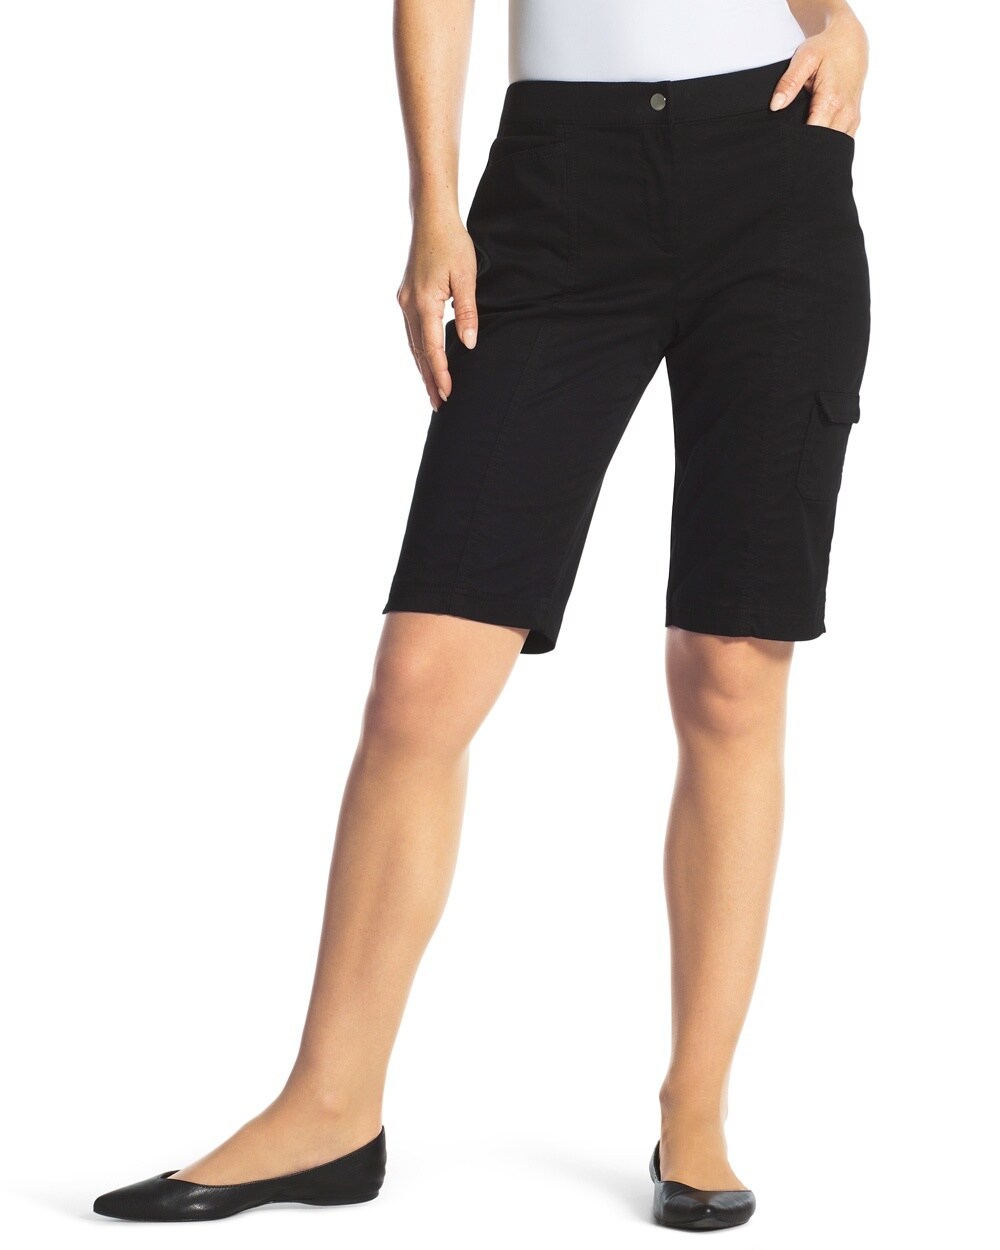 Zenergy Gianna Side-Pocket Shorts in Black